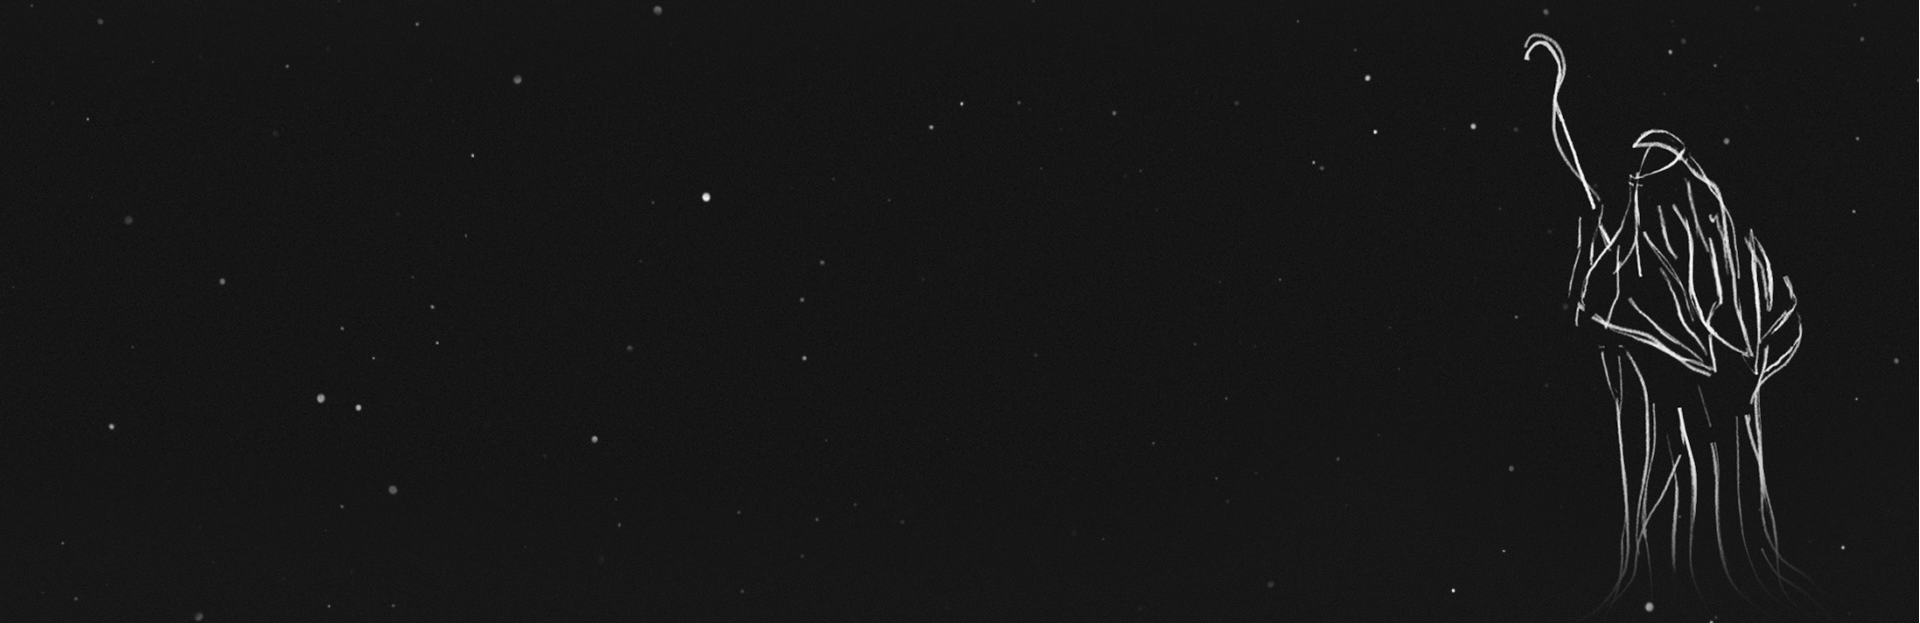 silent-night-star-field-still-banner-trans